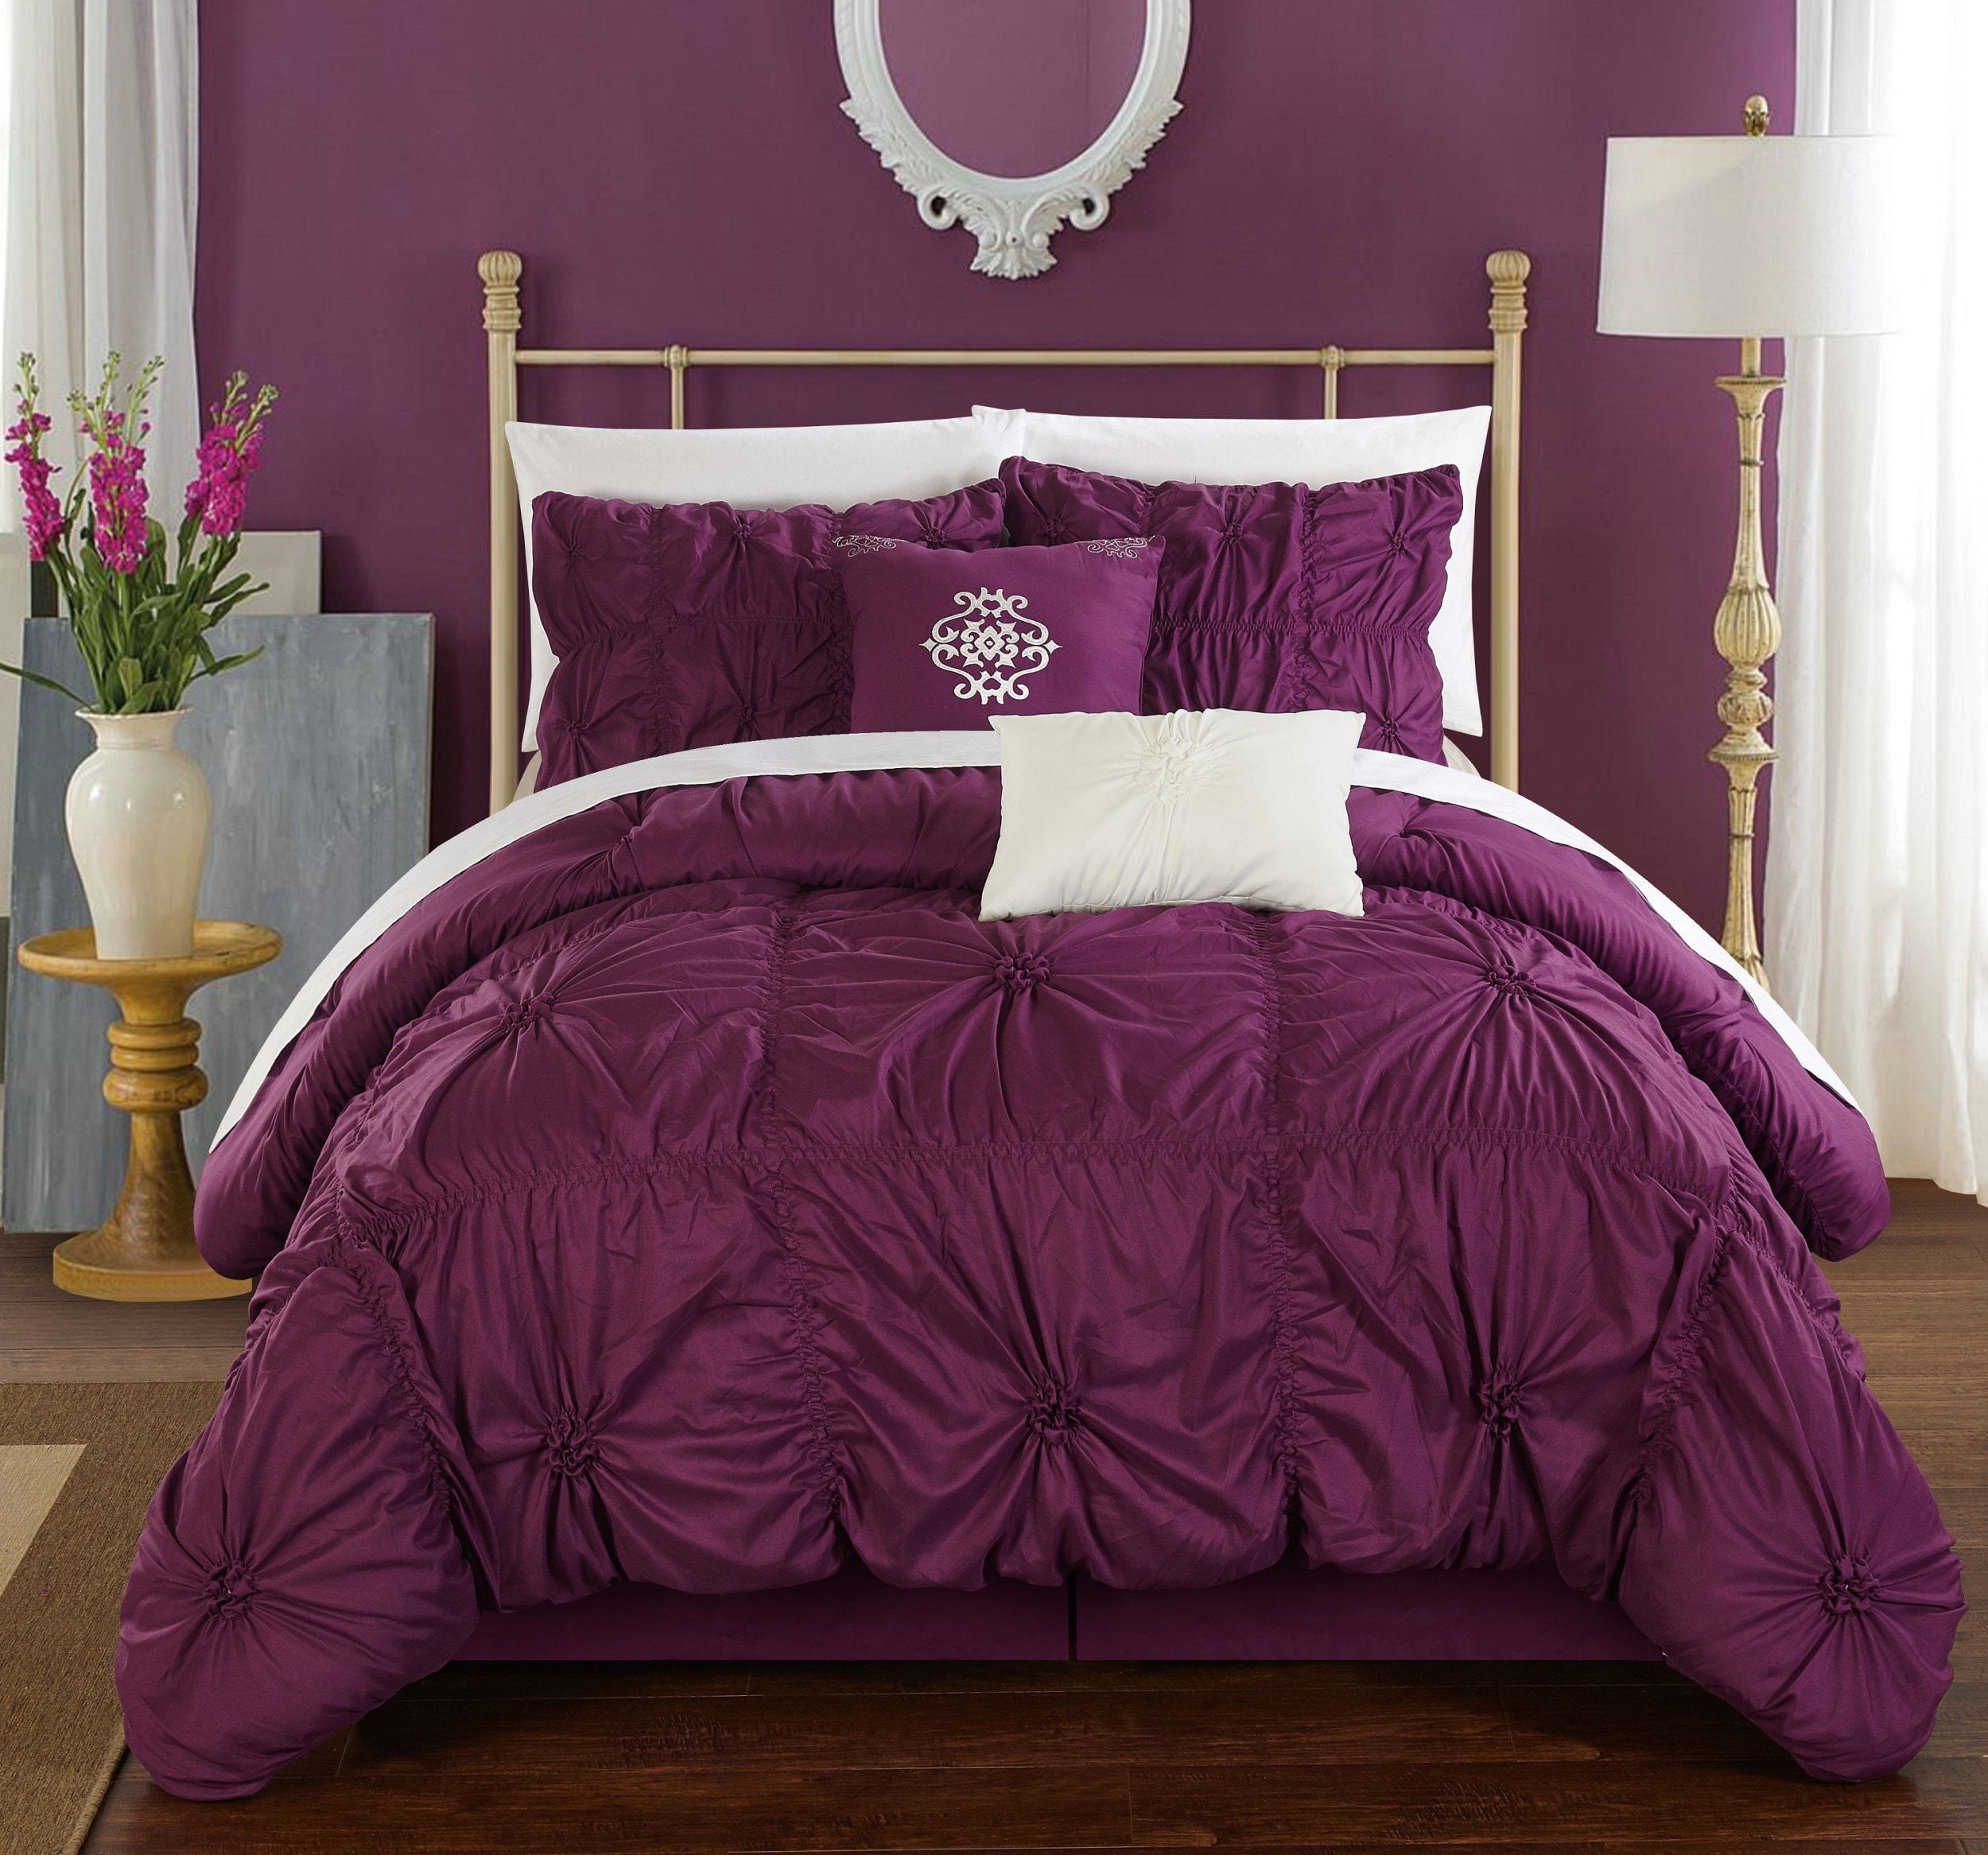 Chic Home Design Halpert 10-Piece Purple Queen Comforter Set in the